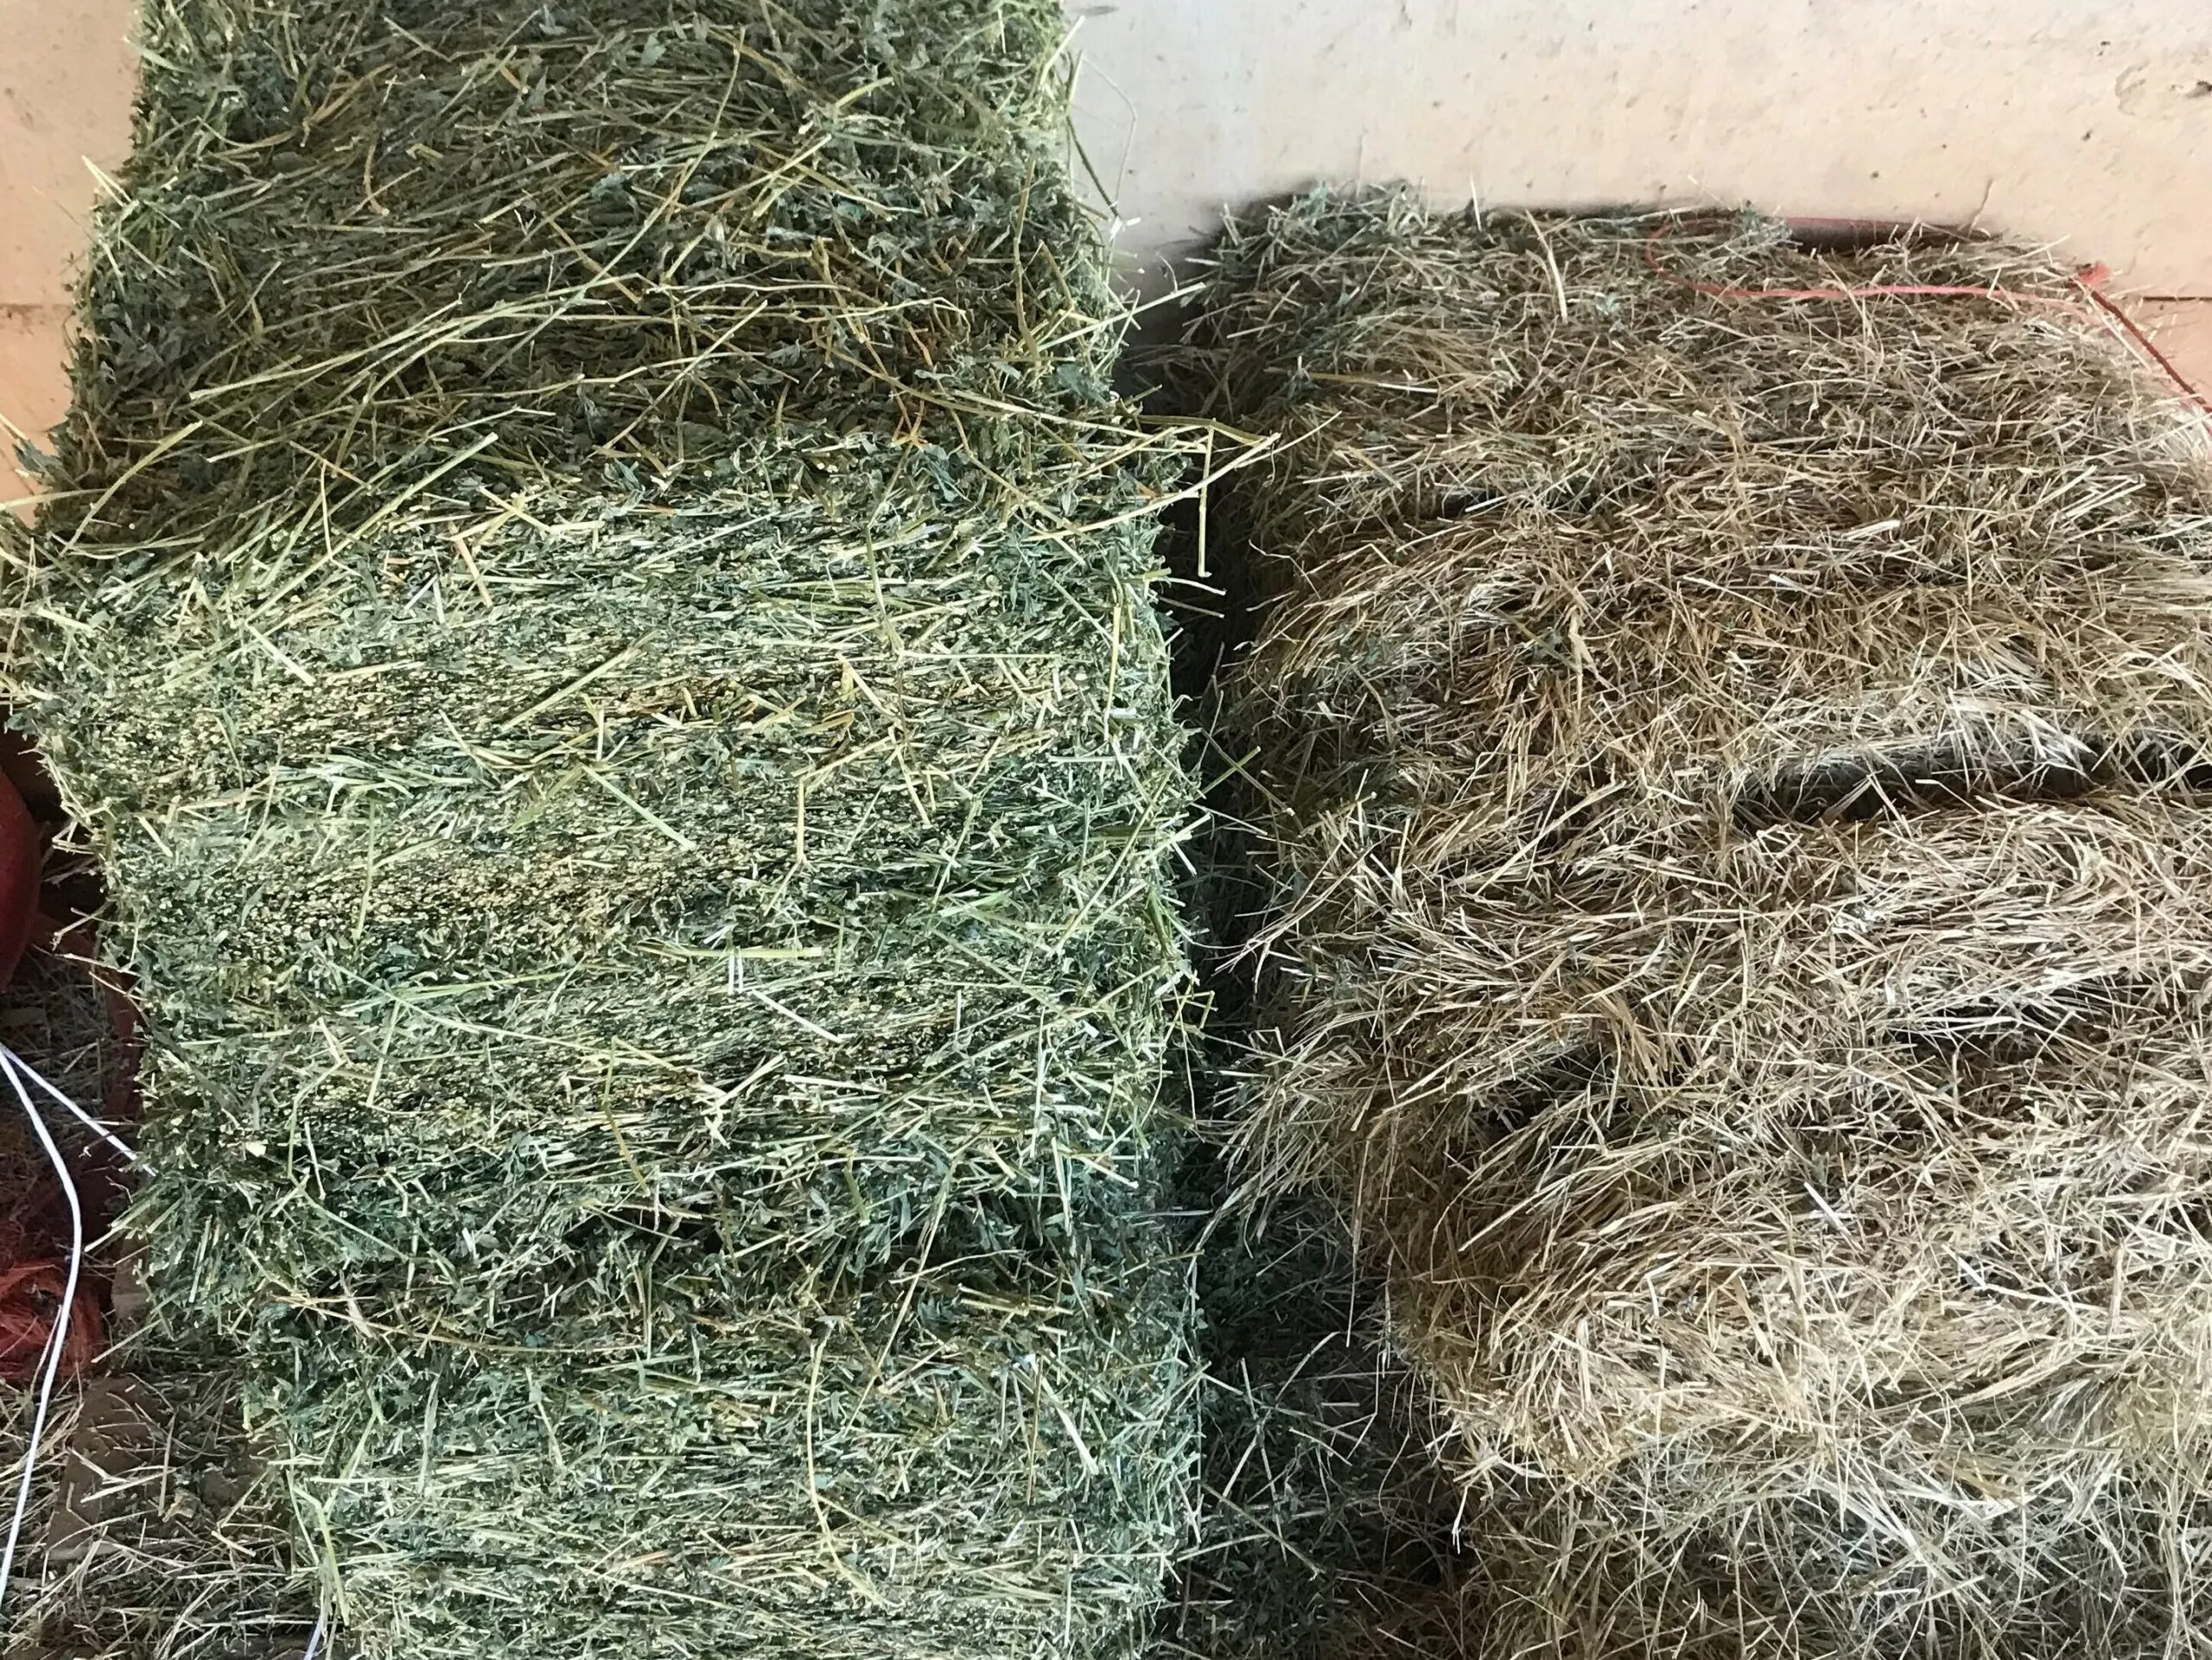 Imagen de heno de bermudagrass junto a heno de alfalfa